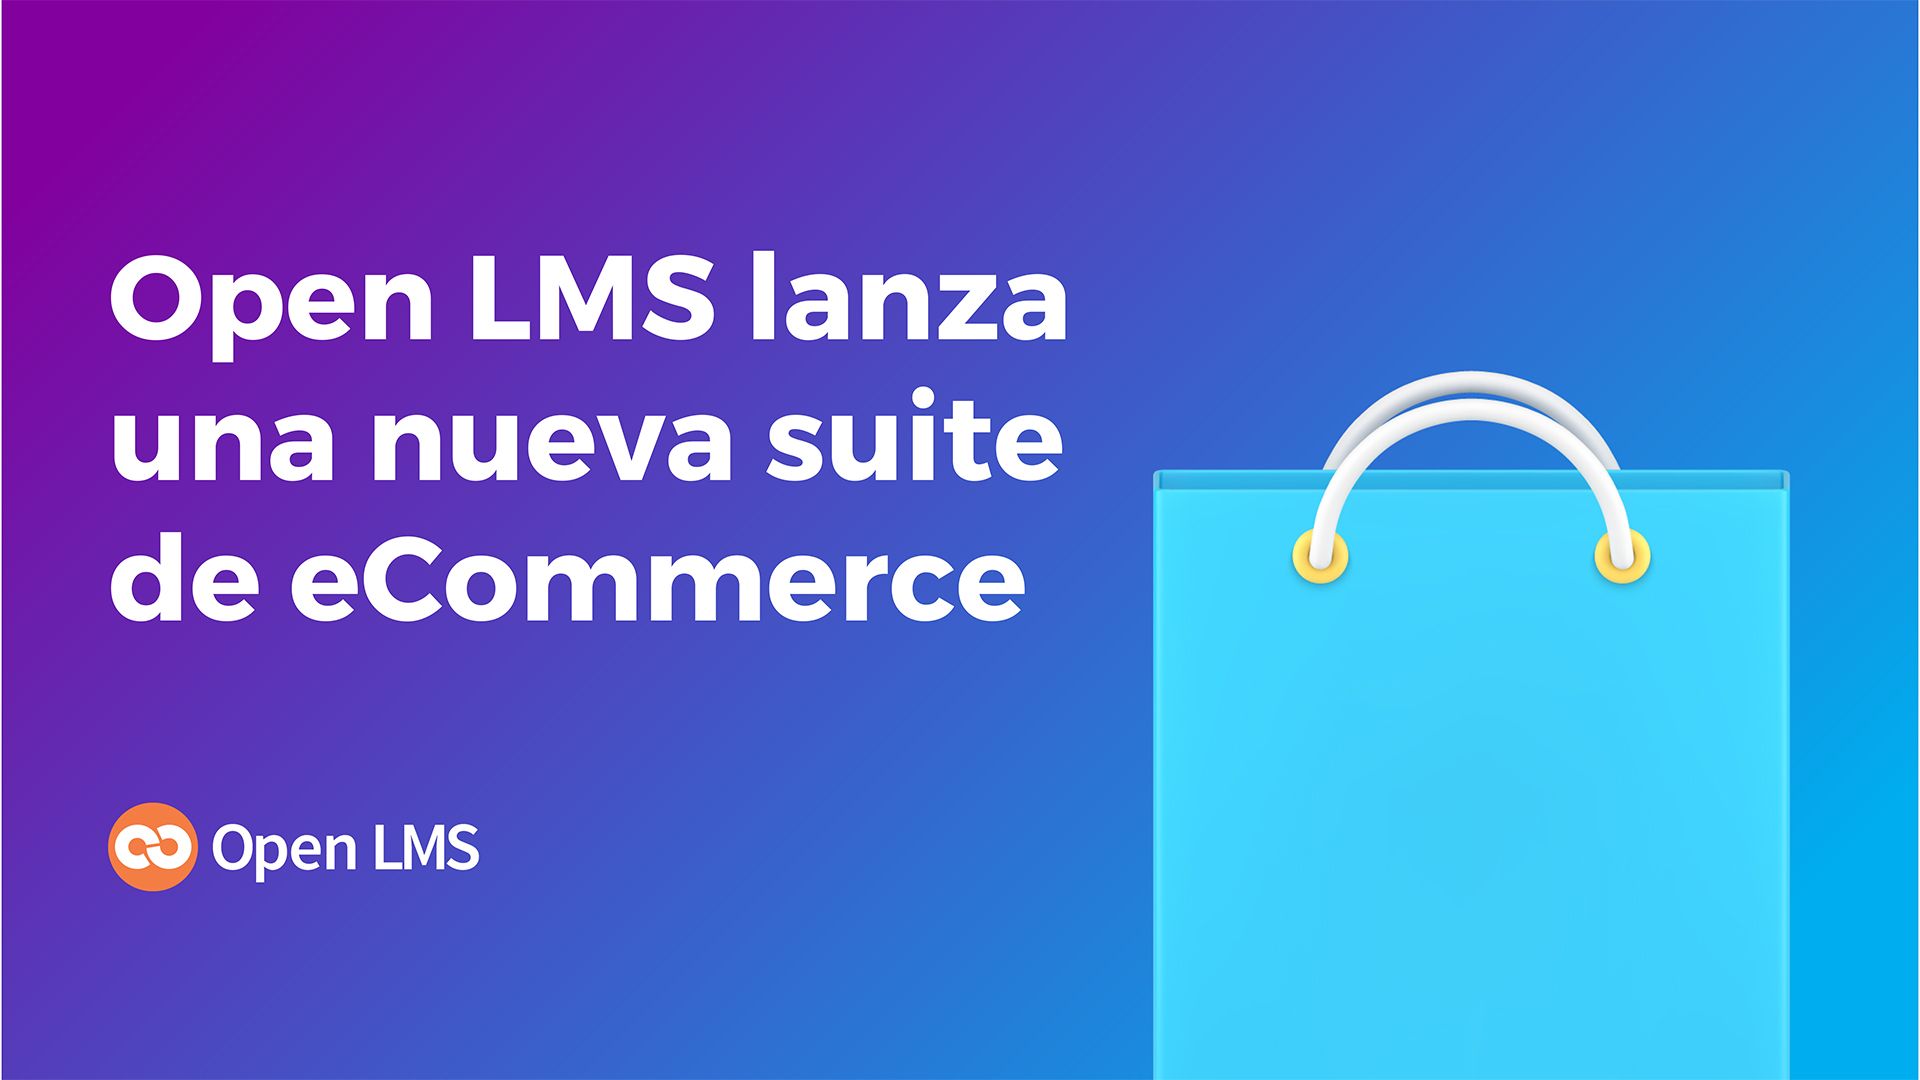 Open LMS lanza nueva suite de ecommerce para potenciar la rentabilidad de los LMS